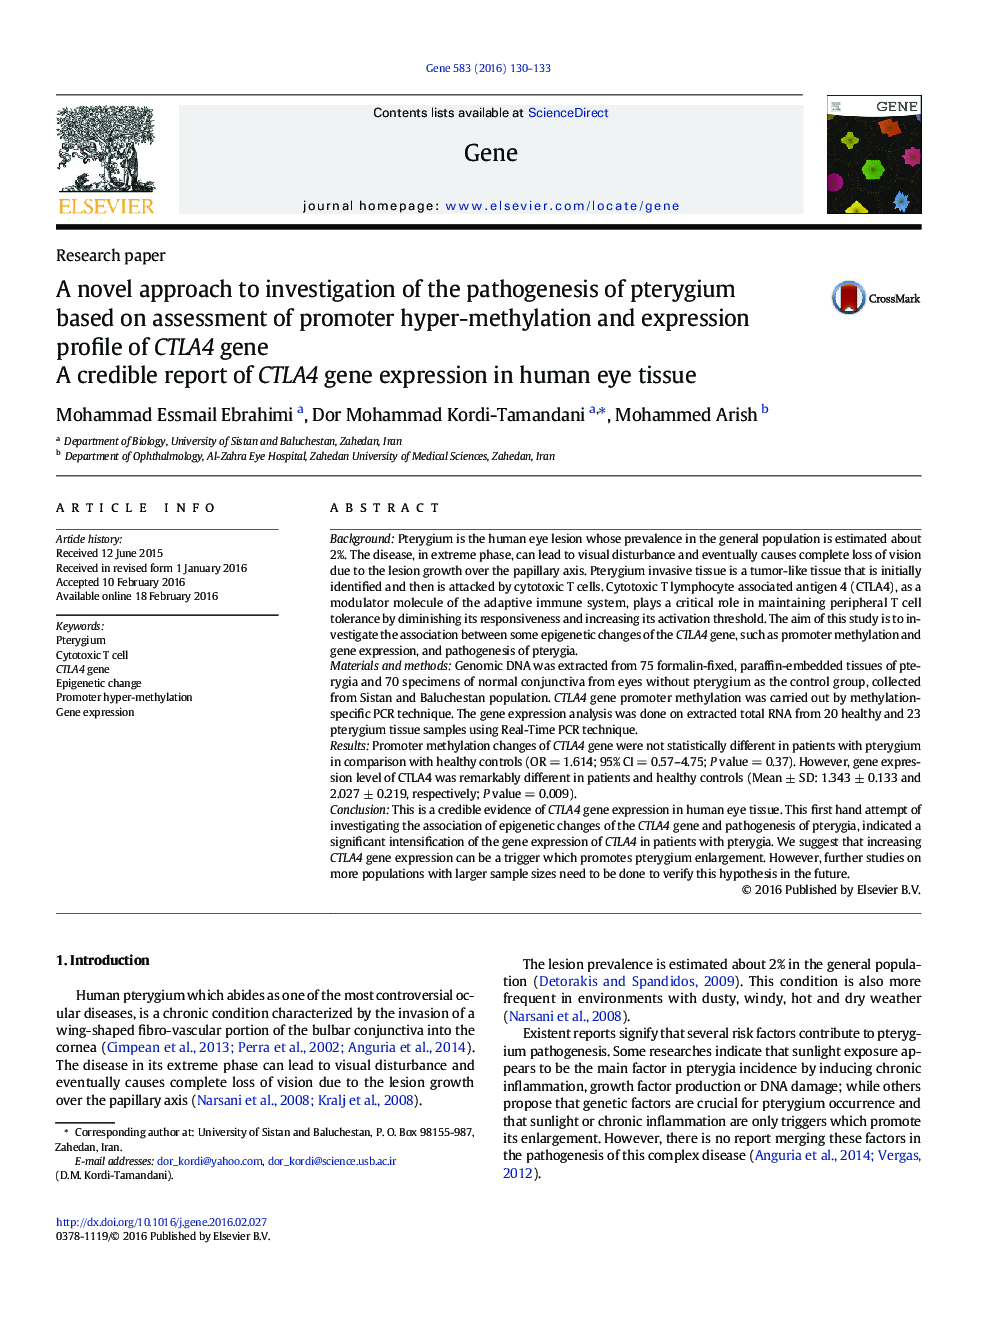 یک رویکرد جدید به بررسی پاتوژنز پترژیوم براساس ارزیابی پروموتر هیپر متیلاسیون و بیان پروفایل ژن CTLA4: گزارش قابل اعتماد از بیان ژن CTLA4 در بافت چشم انسان